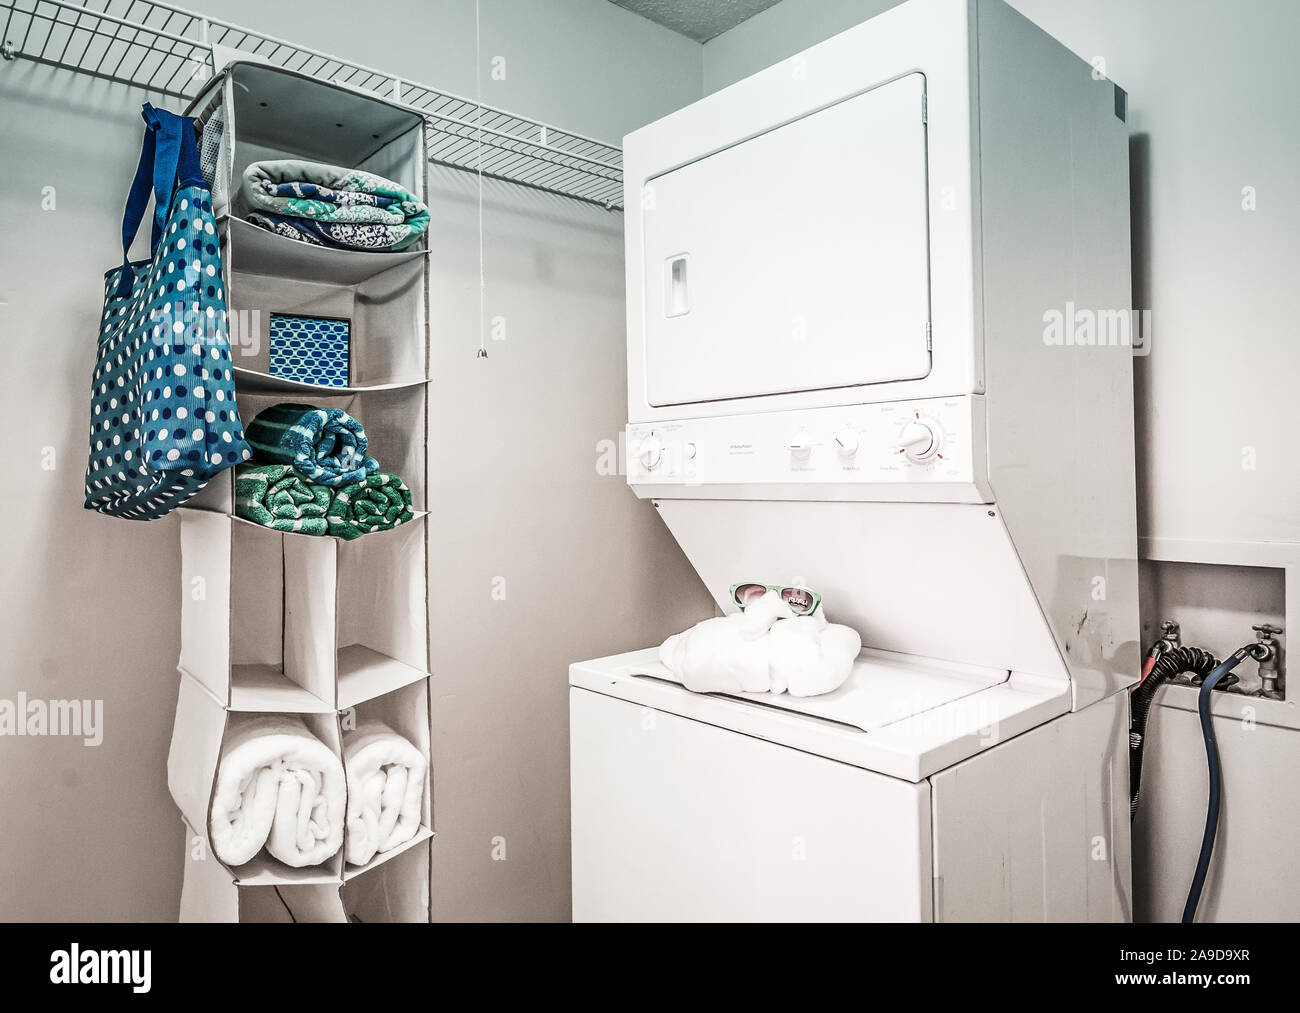 Lavadora secadora e imágenes de alta resolución - Alamy